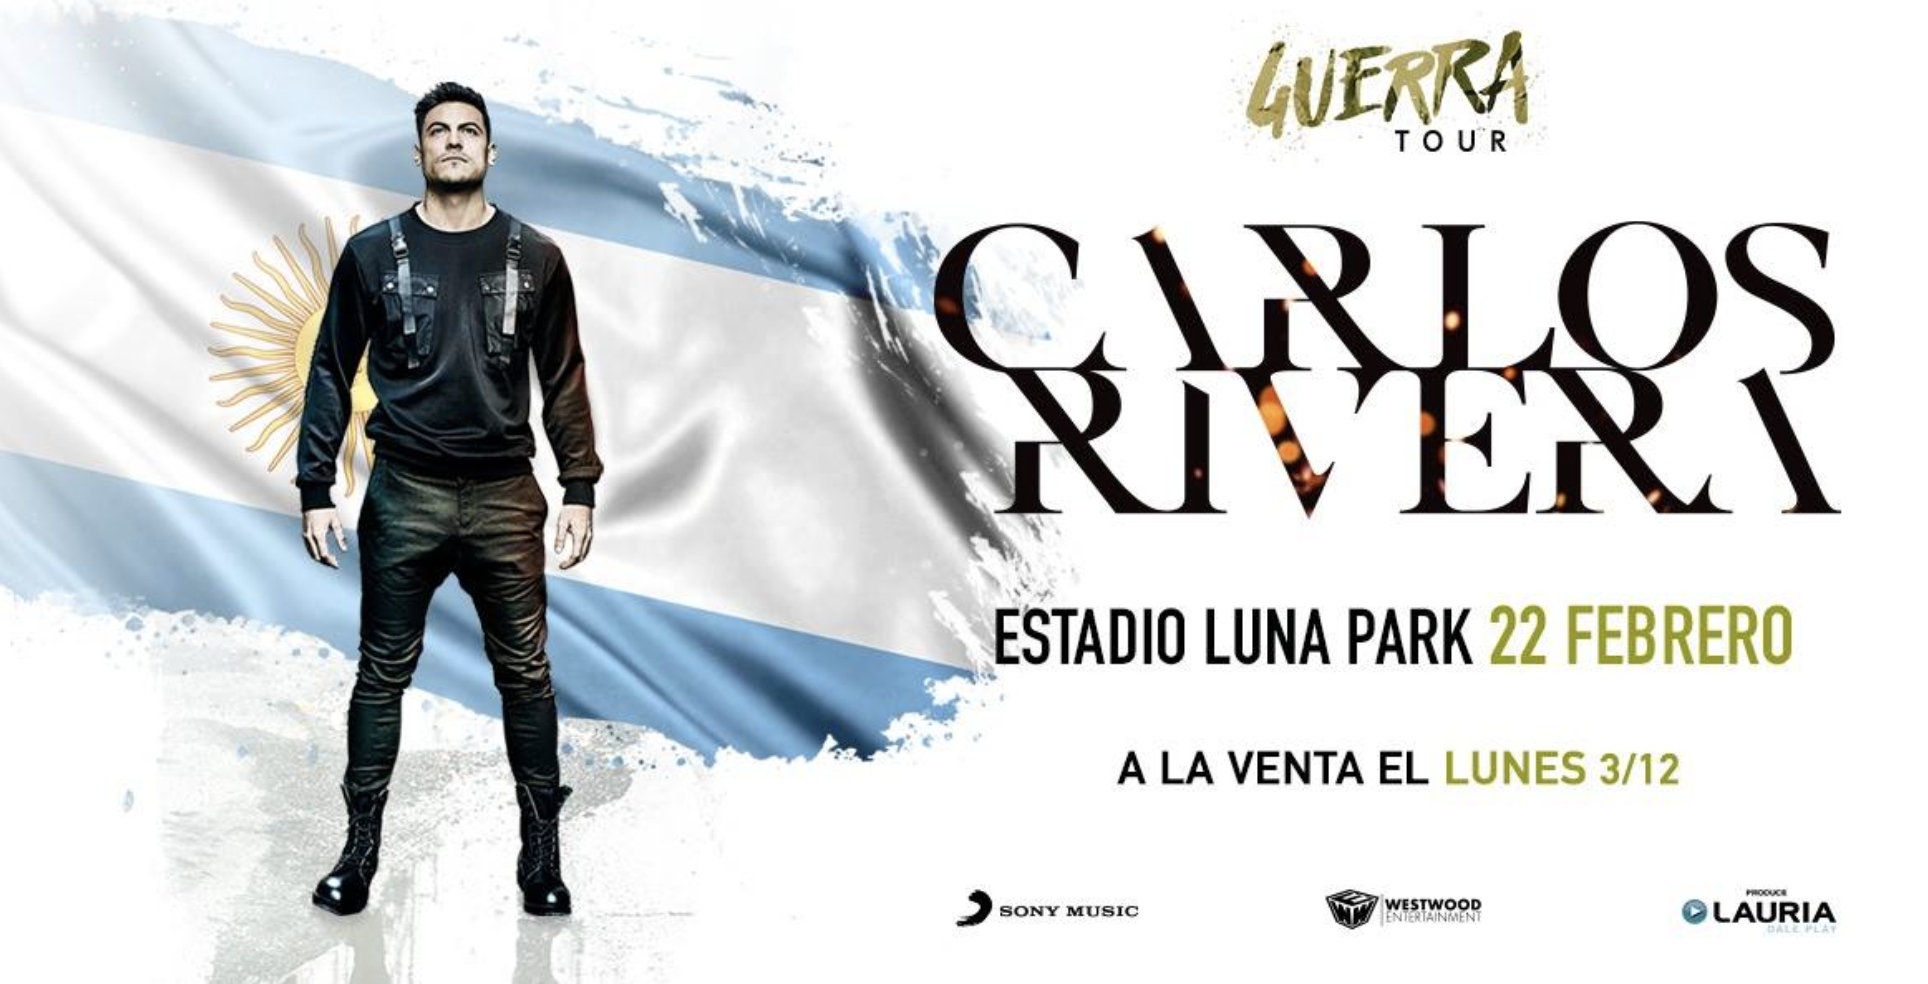 Carlos Rivera anunció show en Argentina! 22 de Febrero, Estadio Luna Park!